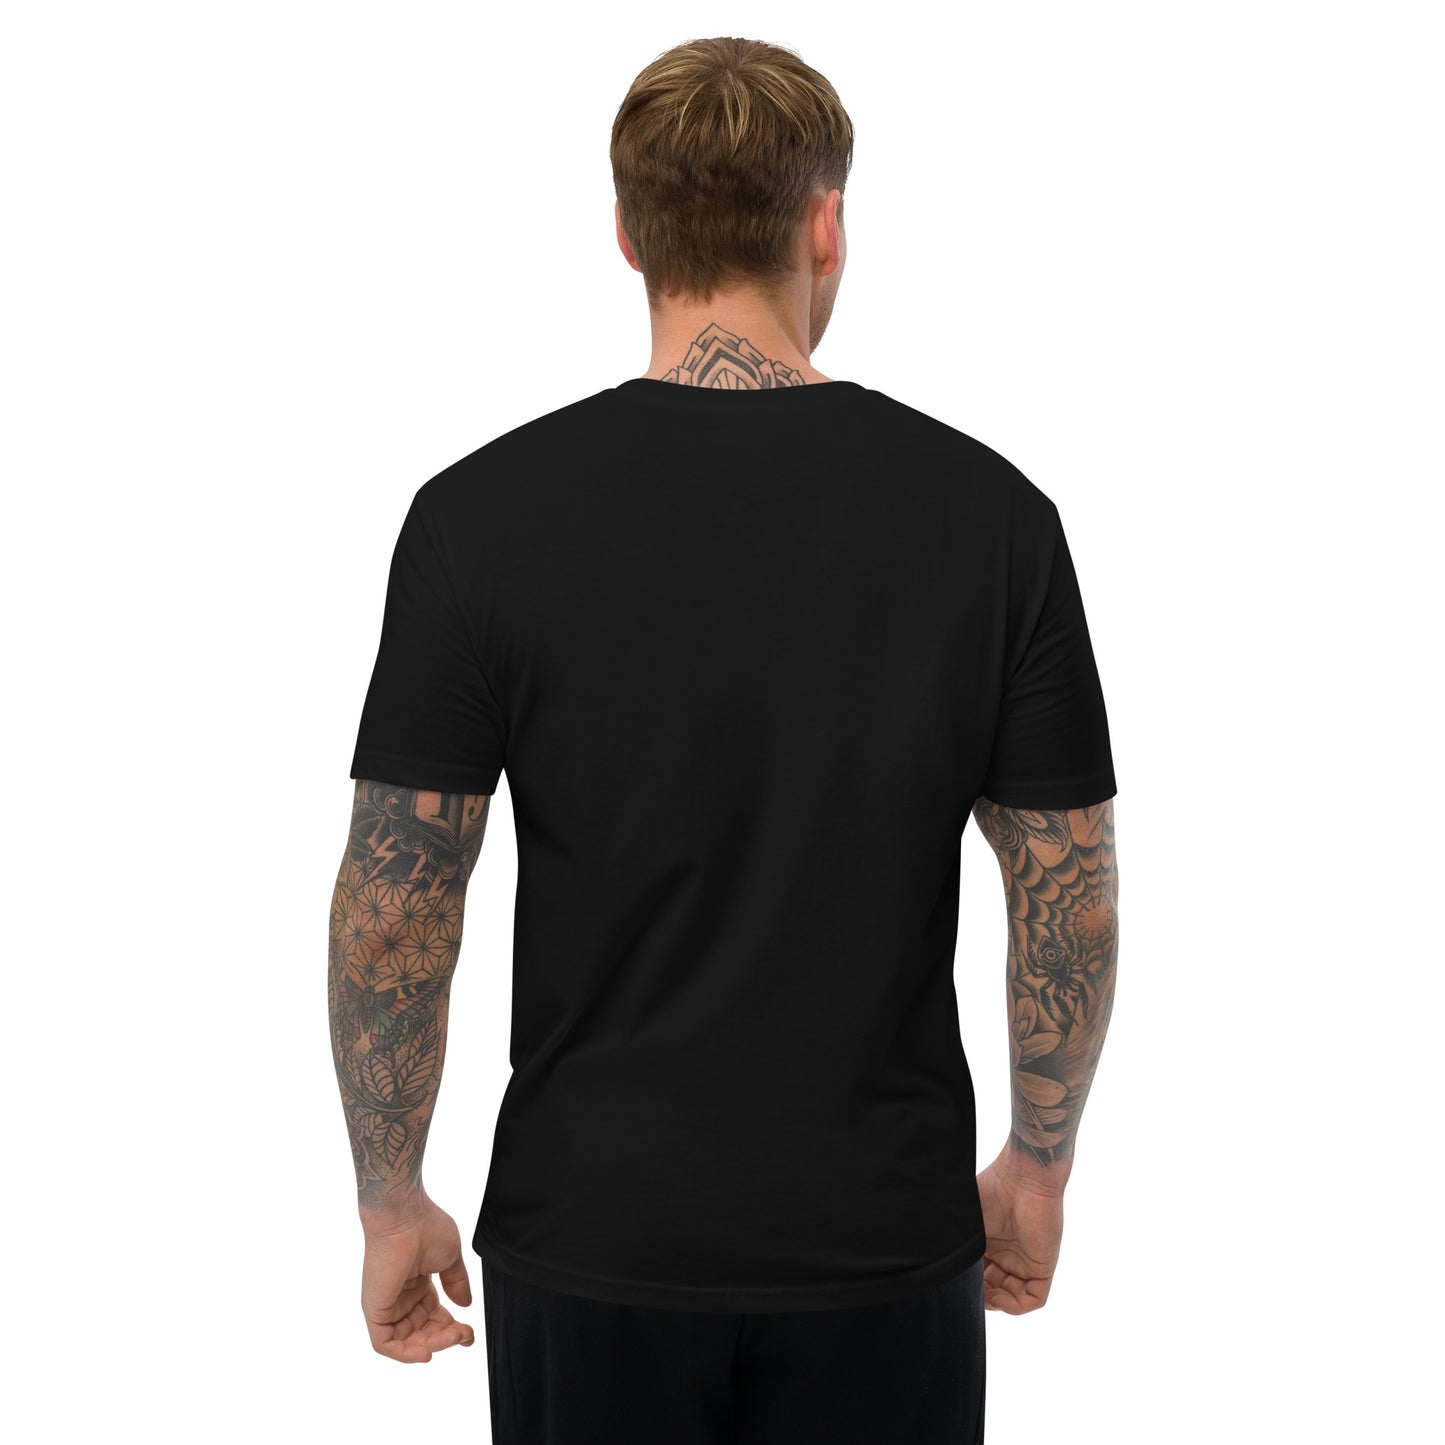 short sleeve t shirt 2, 4Runner Gear